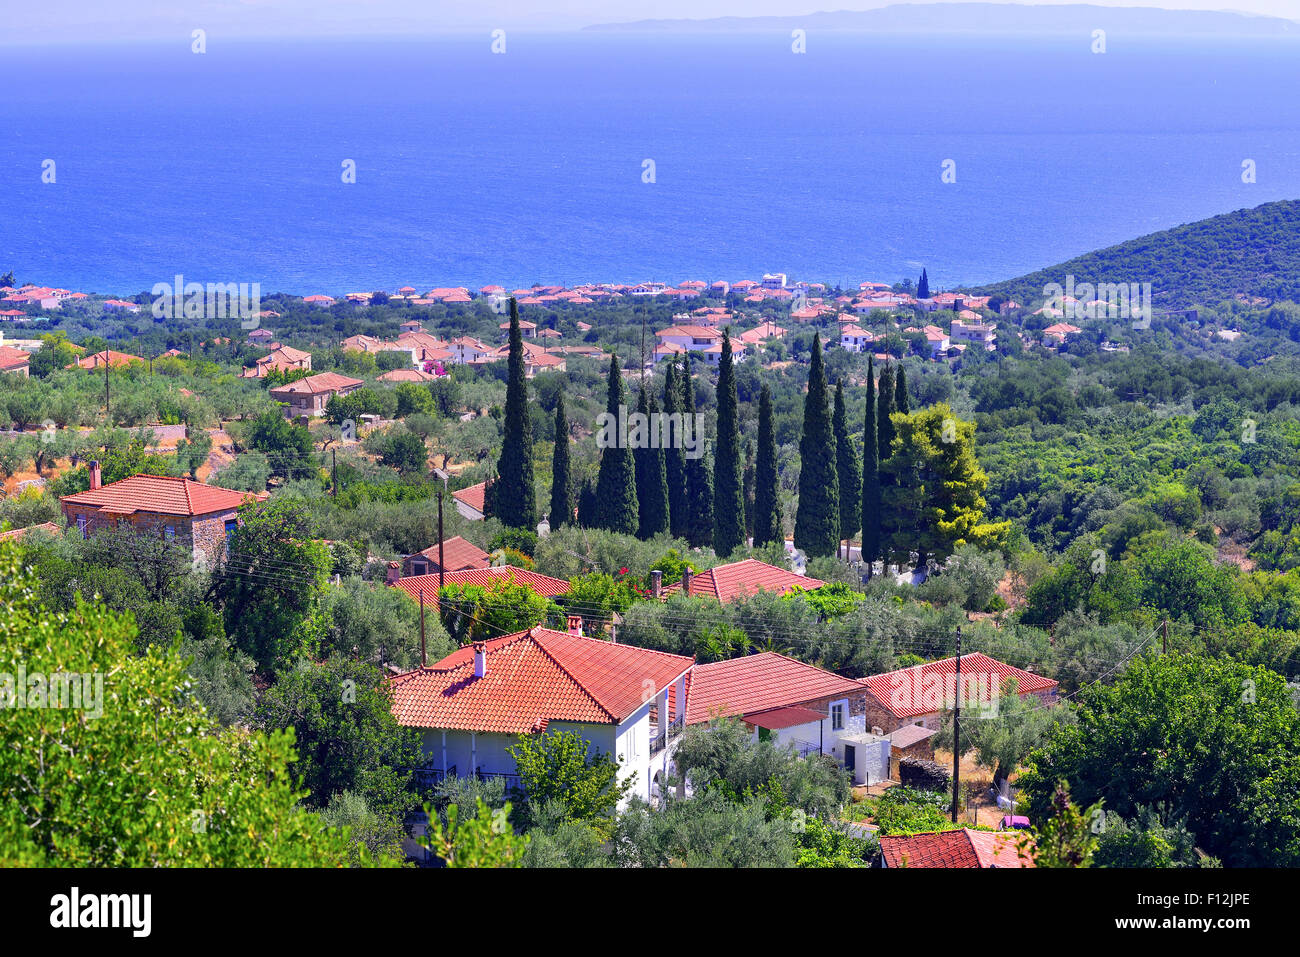 Vista panoramica a Poulithra resort si trova vicino a Leonidio città nella regione di Arcadia, Peloponneso, Grecia Foto Stock